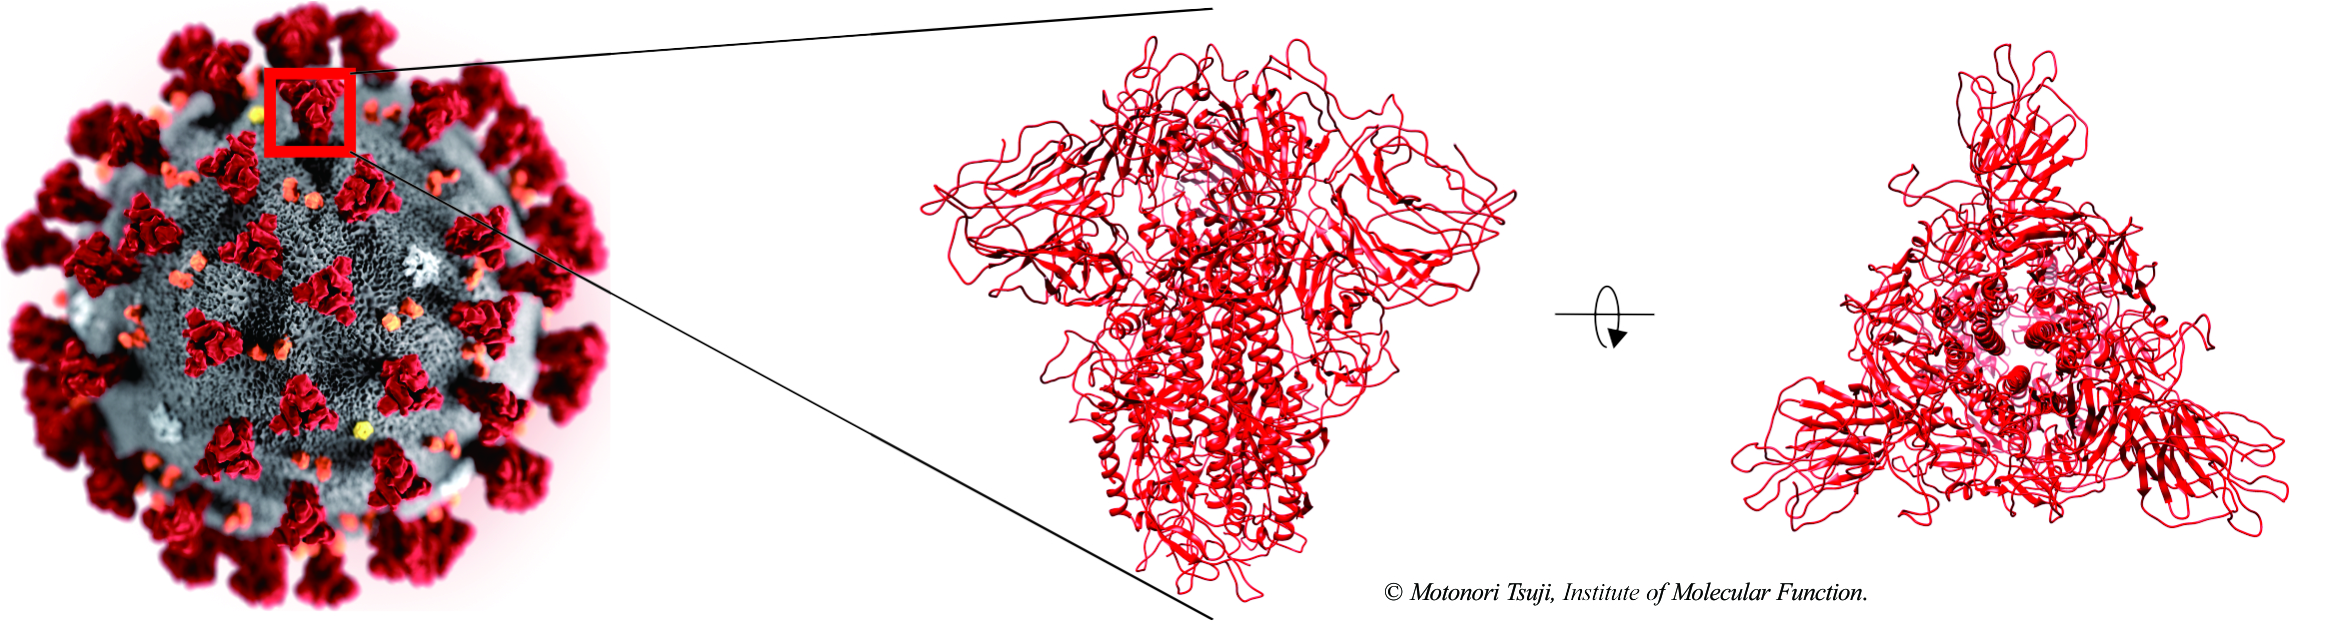 Antibody design for novel coronavirus envelope glycoprotein